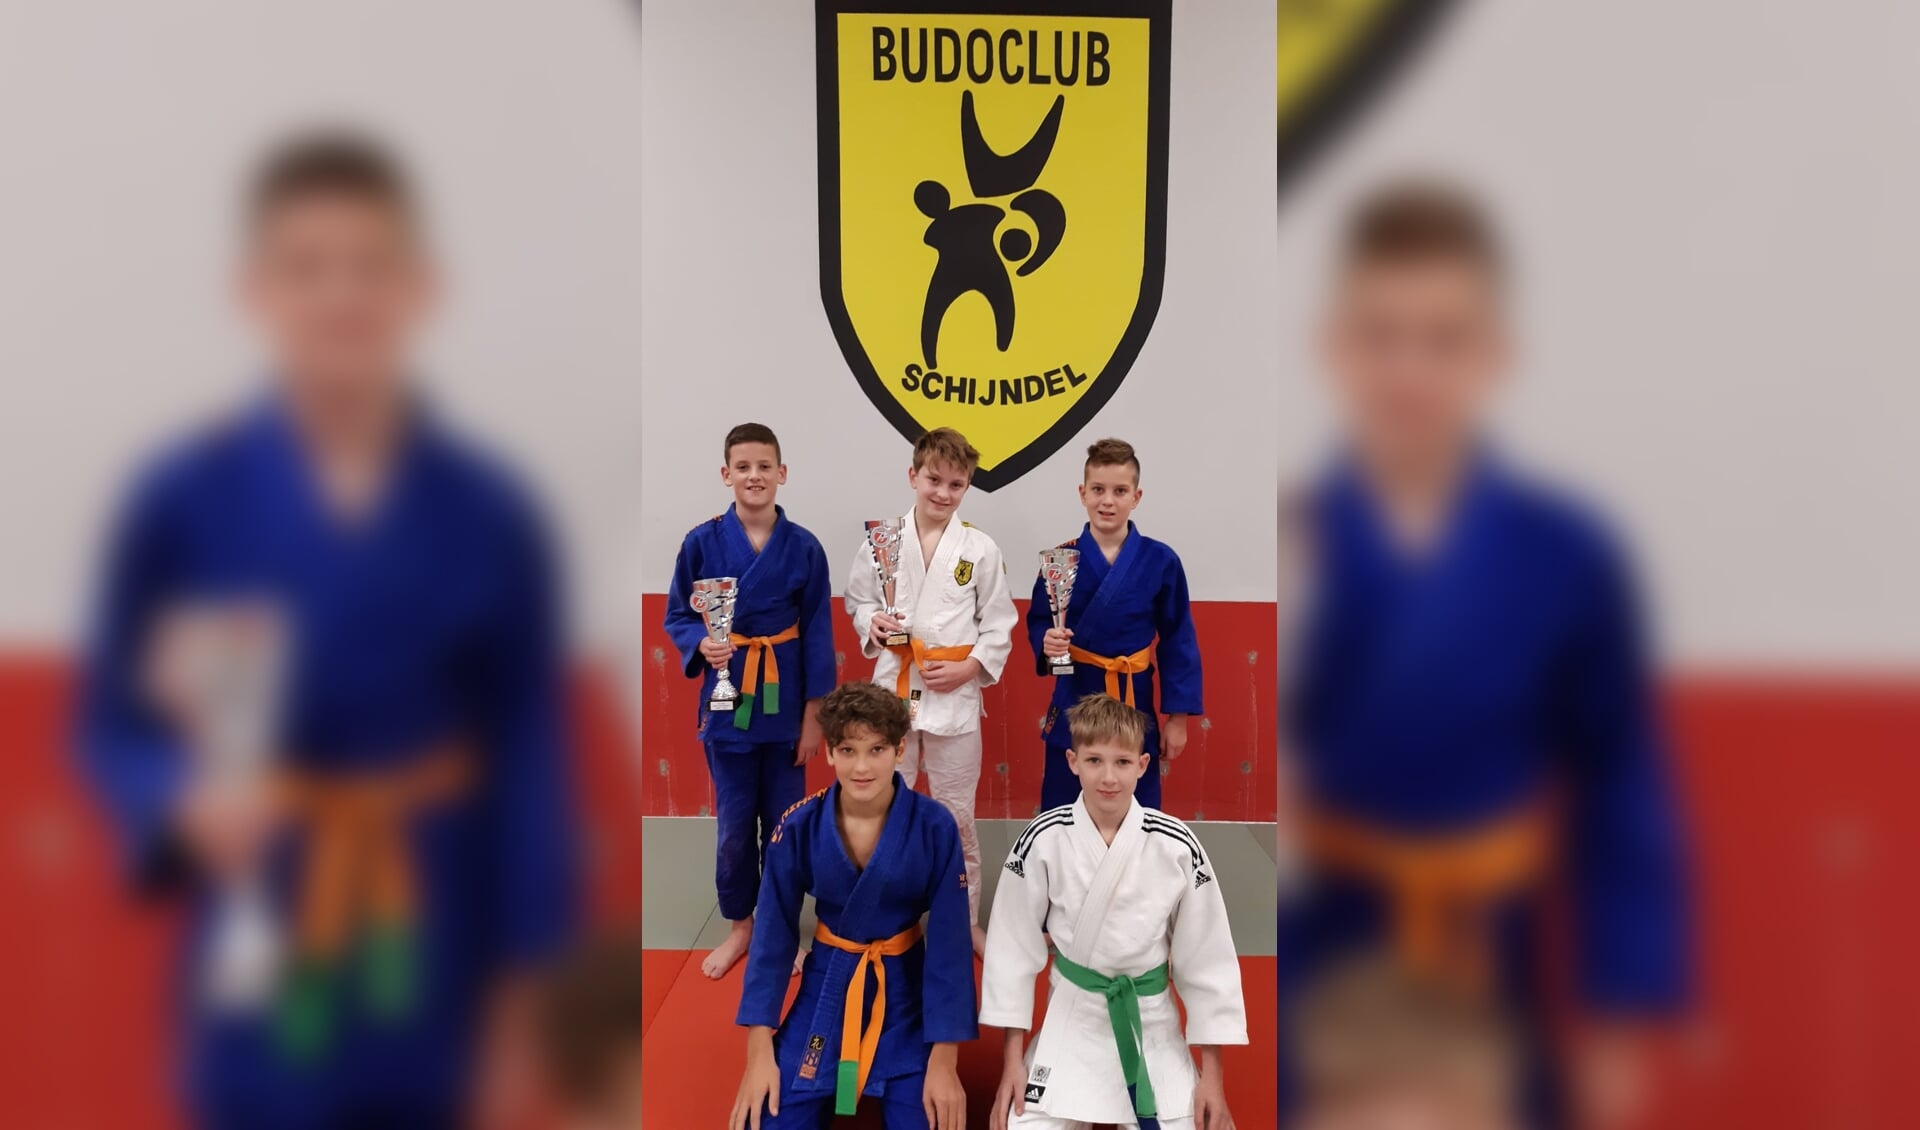 De vijf judoka's die op zaterdag in actie kwamen tijdens de Brabantcup.